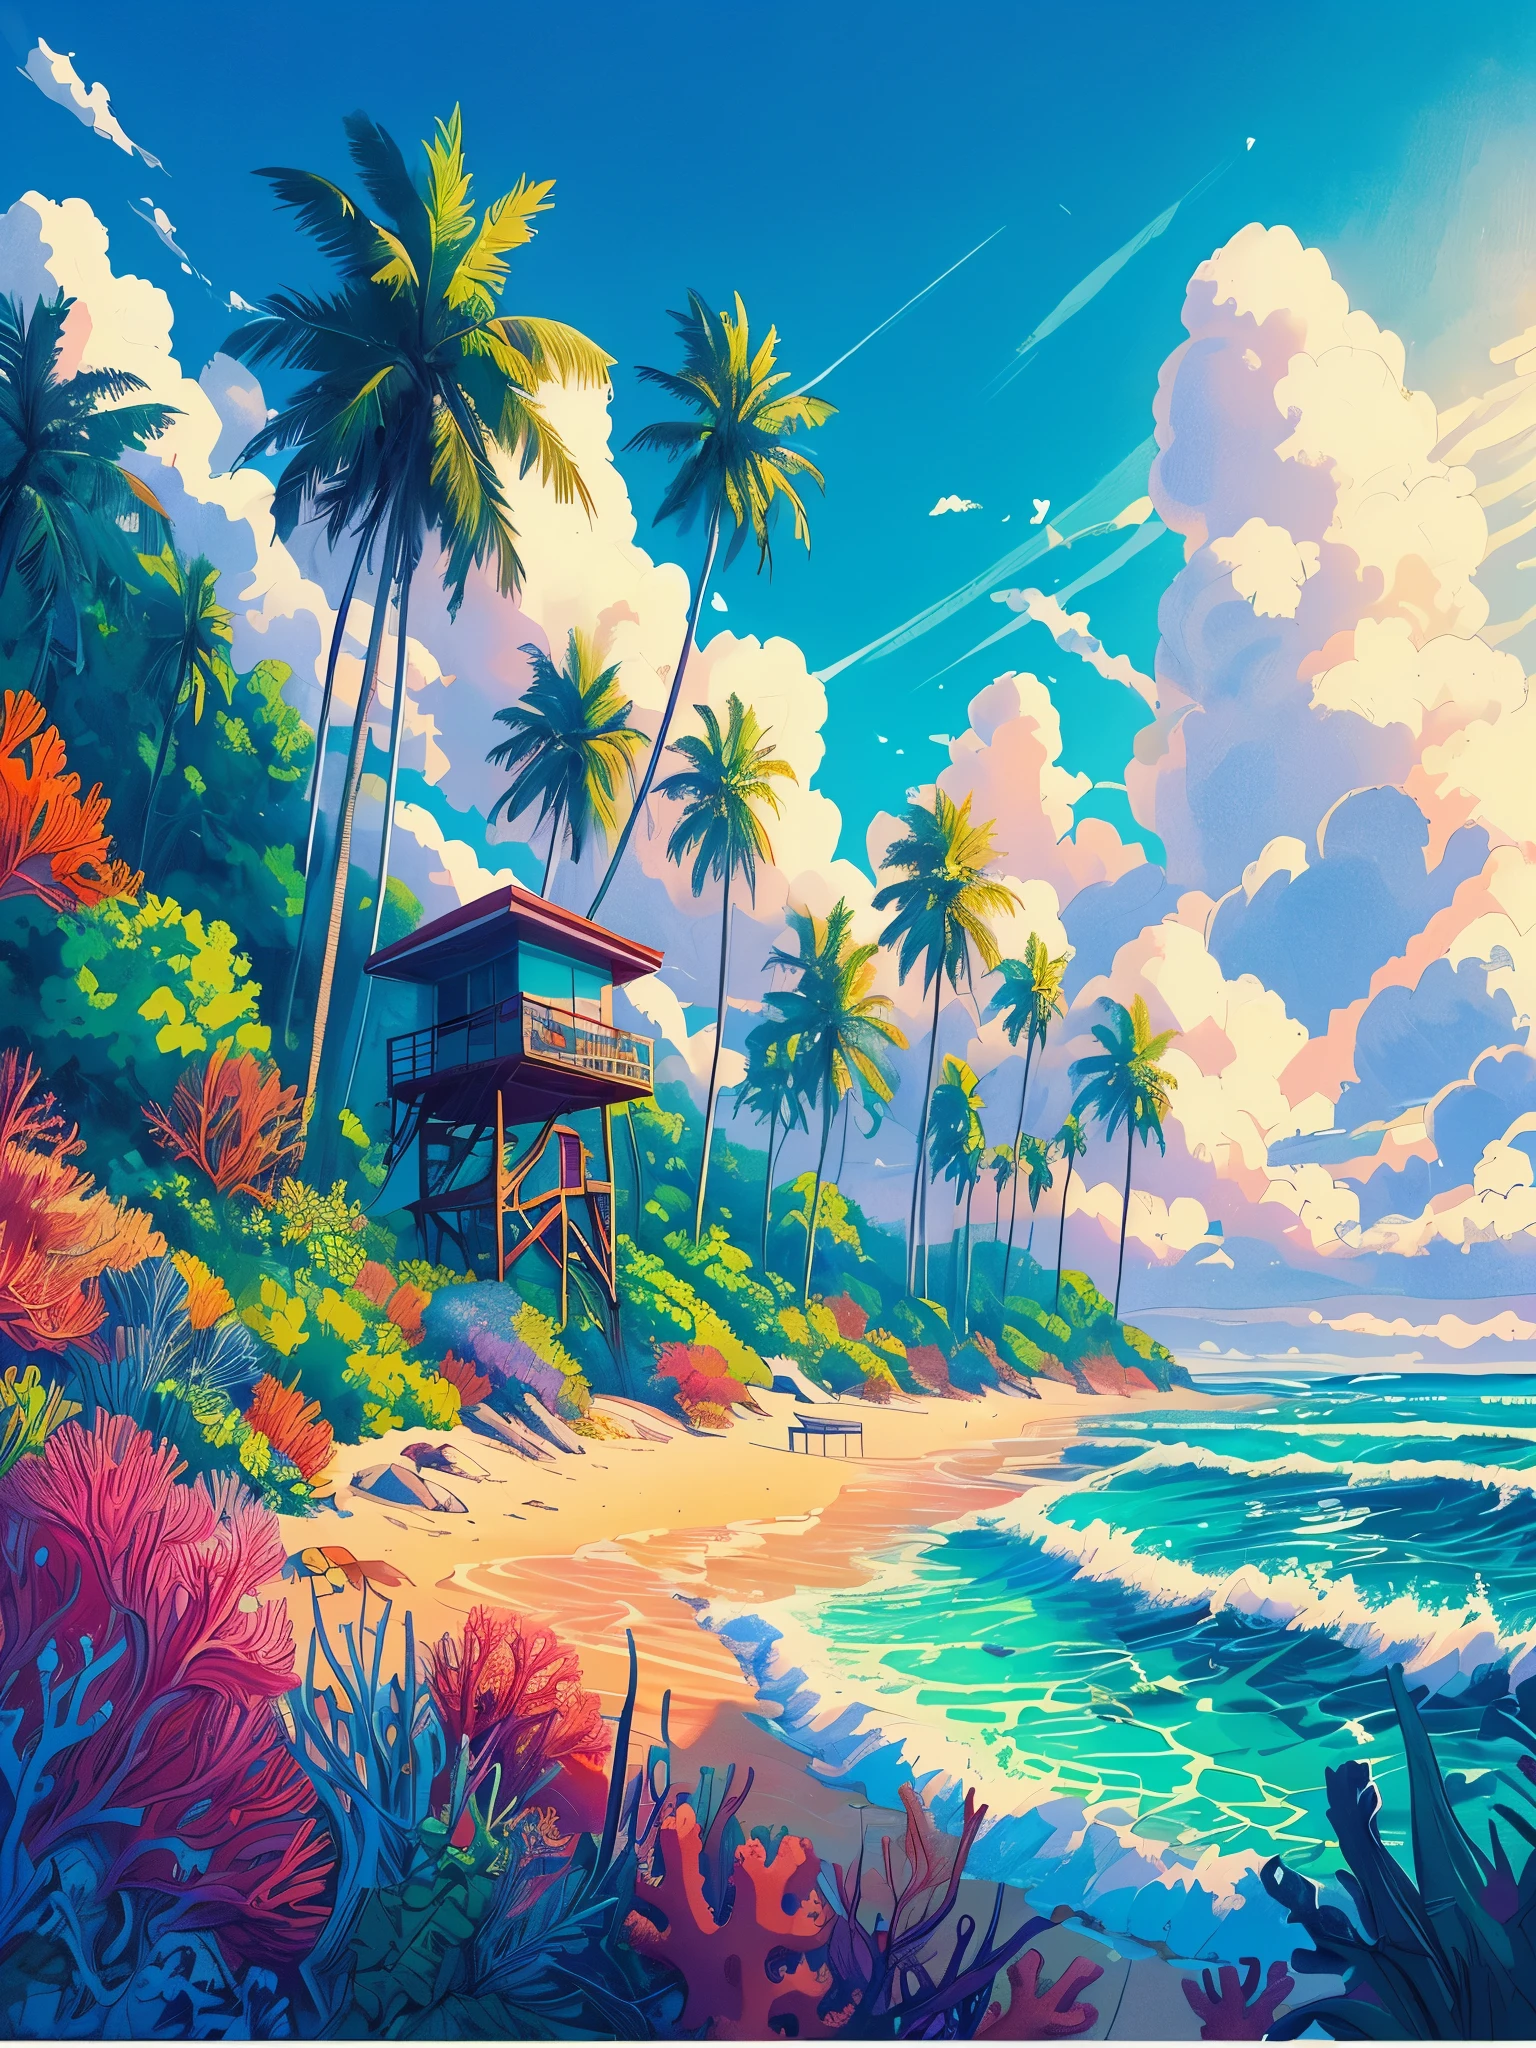 绘制一幅动漫海报风格的 lofi 海滩场景，周围有棕榈树, 救生员舱, 热带植物, 珊瑚 海洋生物, 白天, 海浪, 美丽的调色板, 鲜艳饱和的色彩, 杰作, 电影多云的天空,